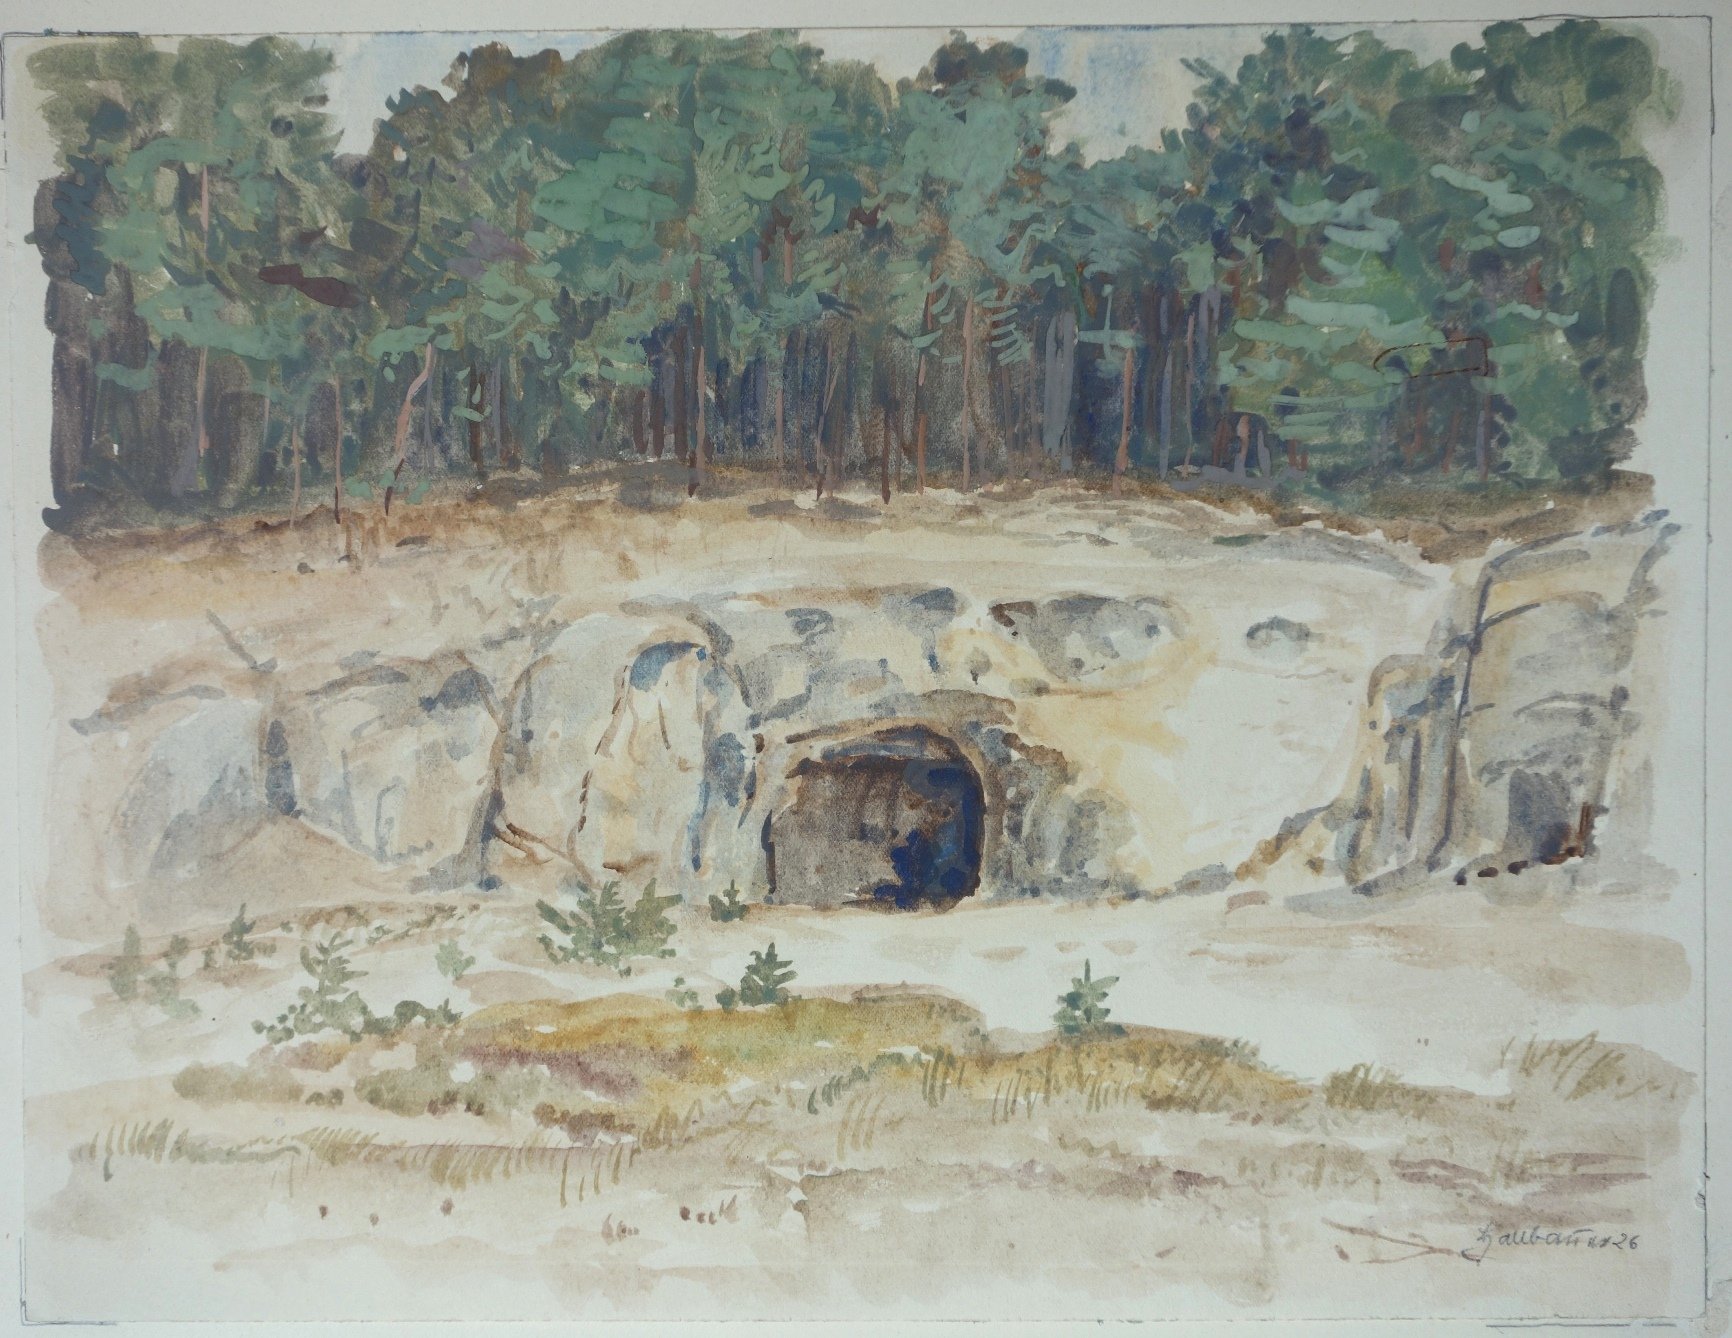 Felsenhöhle am Regenstein, von Christian Hallbauer, 1926 (Schloß Wernigerode GmbH RR-F)